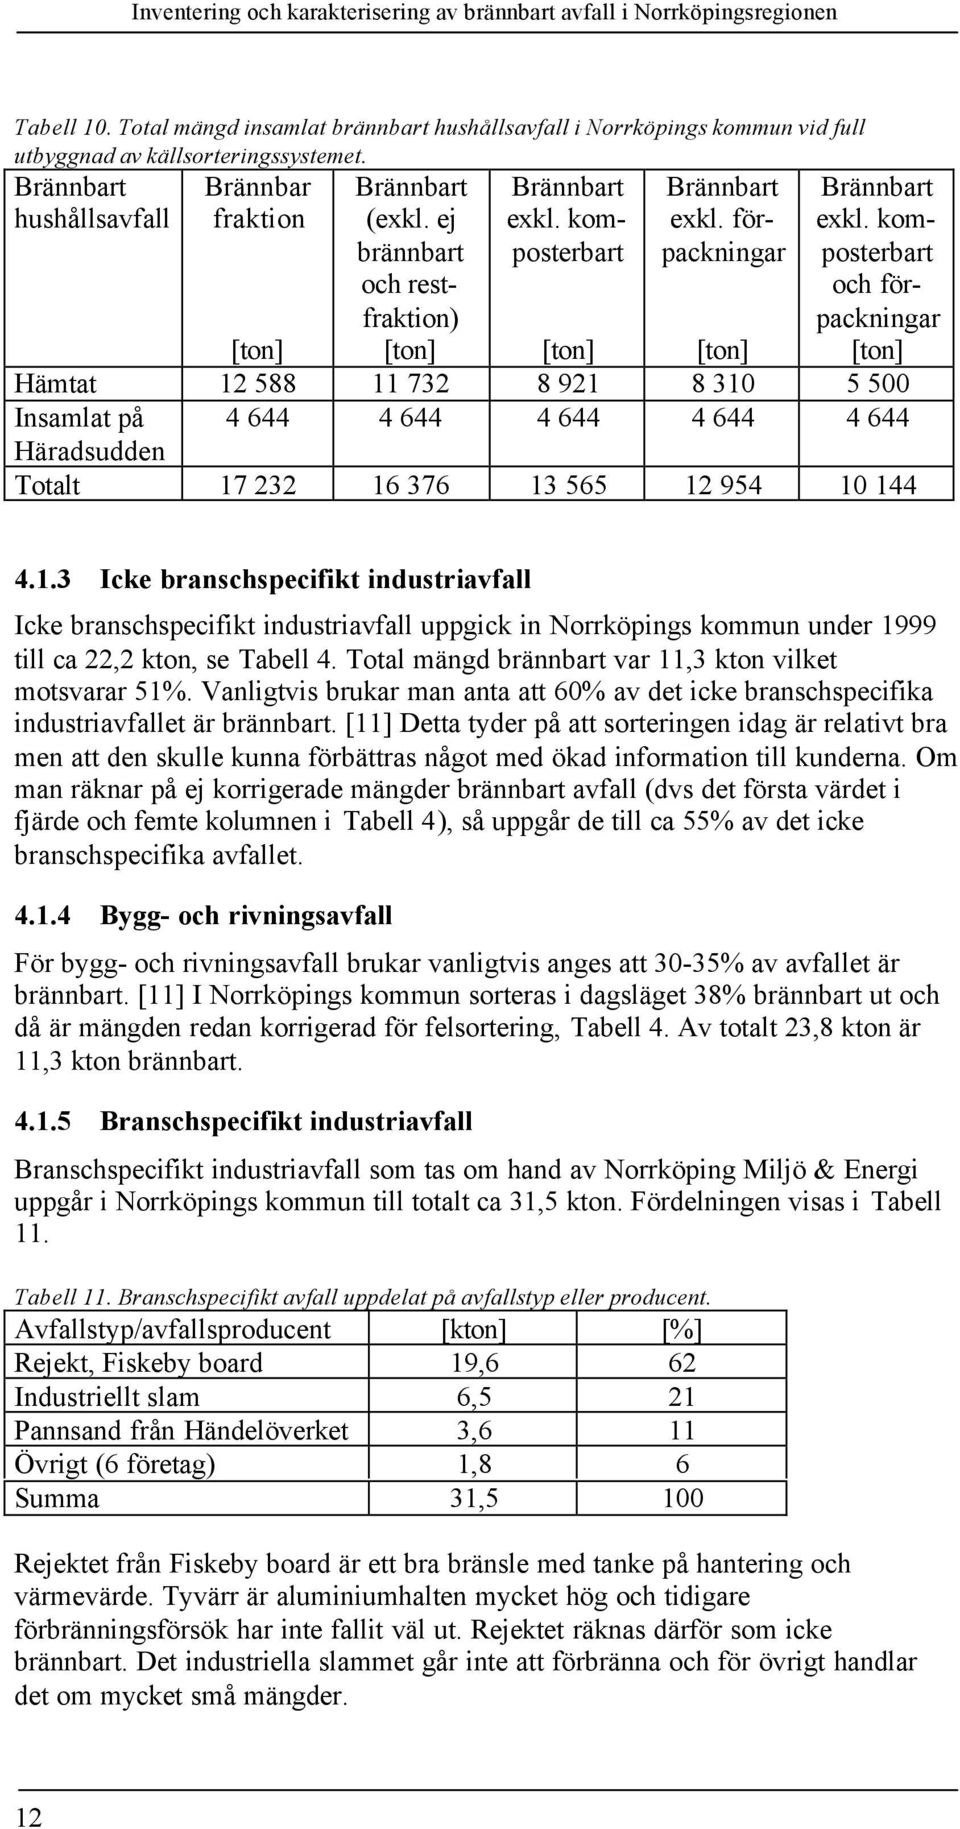 komposterbart och förpackningar [ton] Hämtat 12 588 11 732 8 921 8 310 5 500 Insamlat på 4 644 4 644 4 644 4 644 4 644 Häradsudden Totalt 17 232 16 376 13 565 12 954 10 144 4.1.3 Icke branschspecifikt industriavfall Icke branschspecifikt industriavfall uppgick in Norrköpings kommun under 1999 till ca 22,2 kton, se Tabell 4.